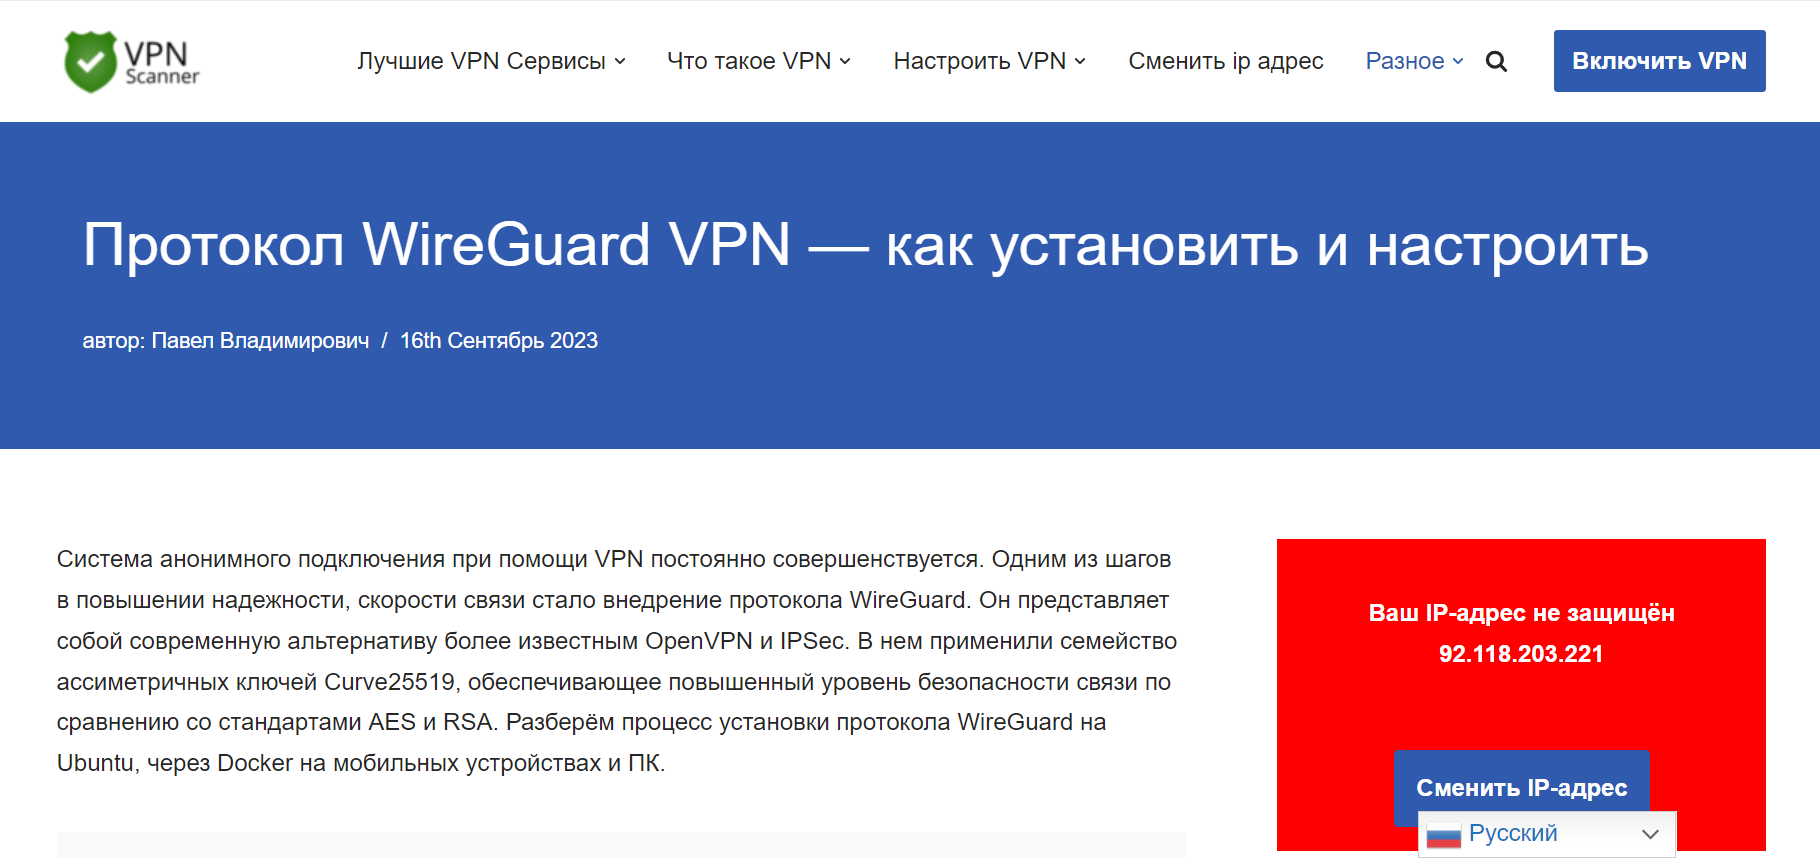 Протокол WireGuard VPN - как установить и настроить